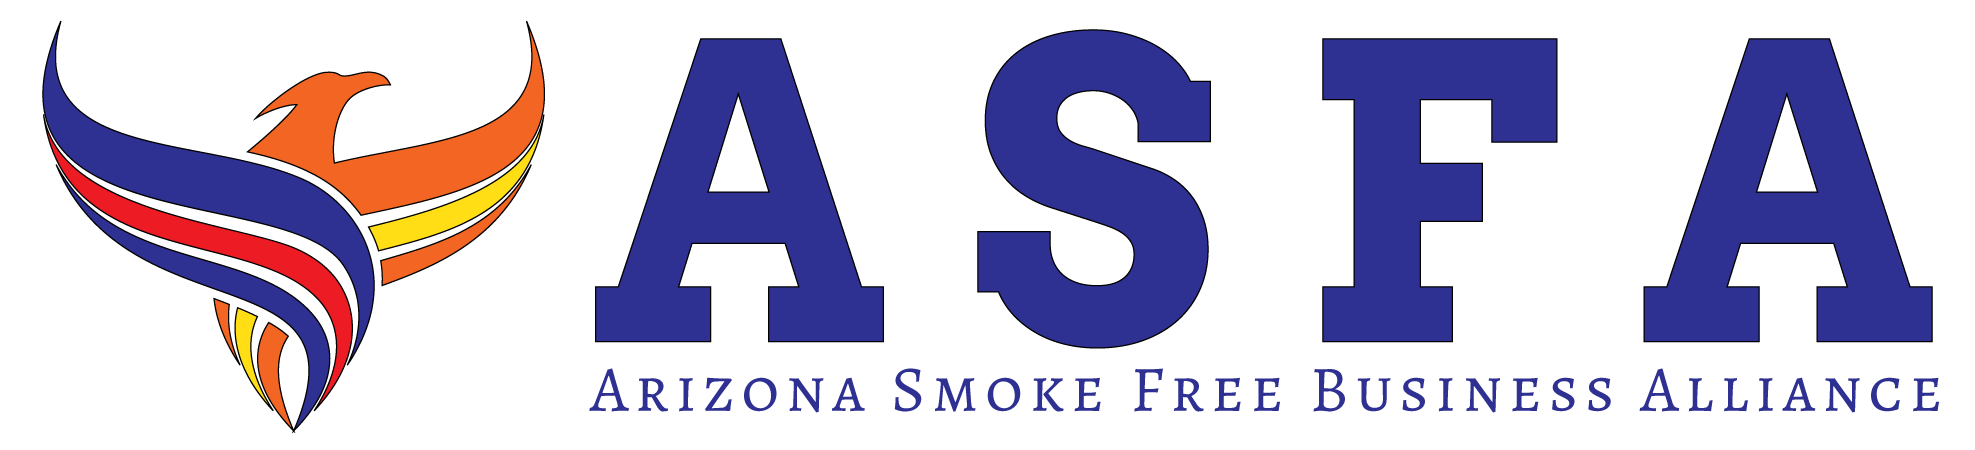 Arizona Smoke Free Business Alliance